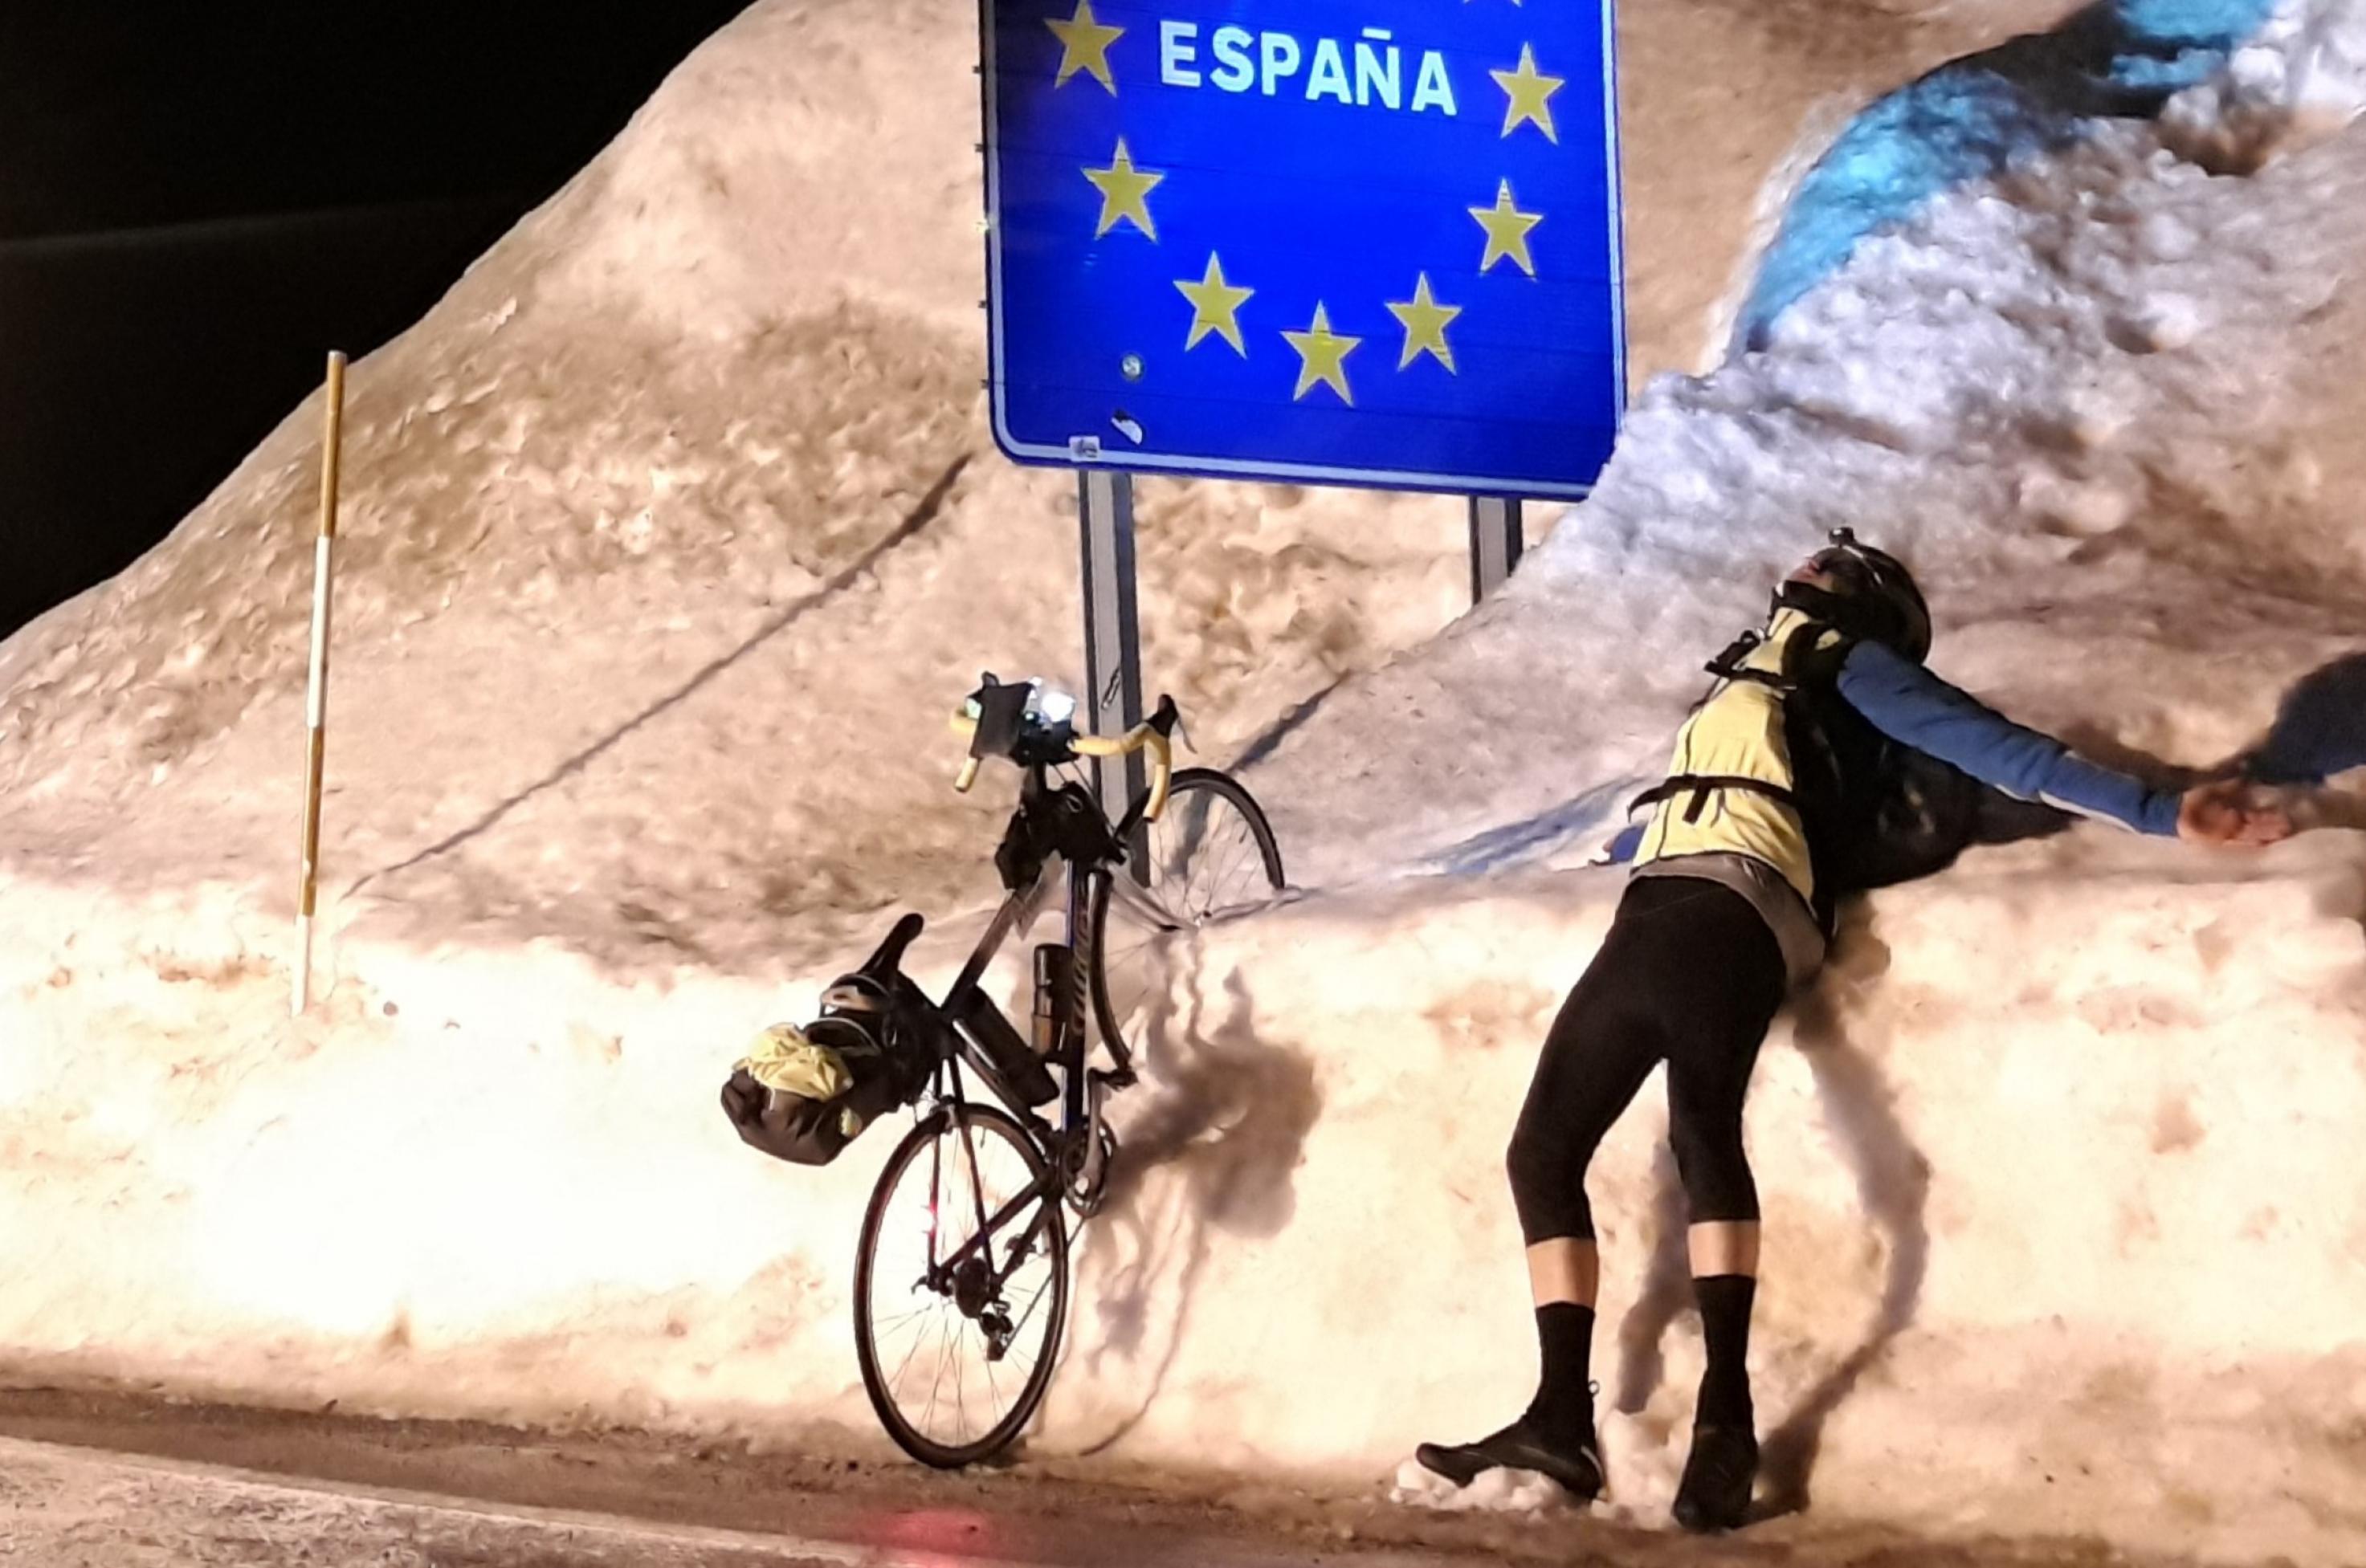 Der Autor hat sich neben Rennrad und Spanien-Grenzinsignien in den meterhohen Schnee am Rand der Passhöhe fallen lassen.